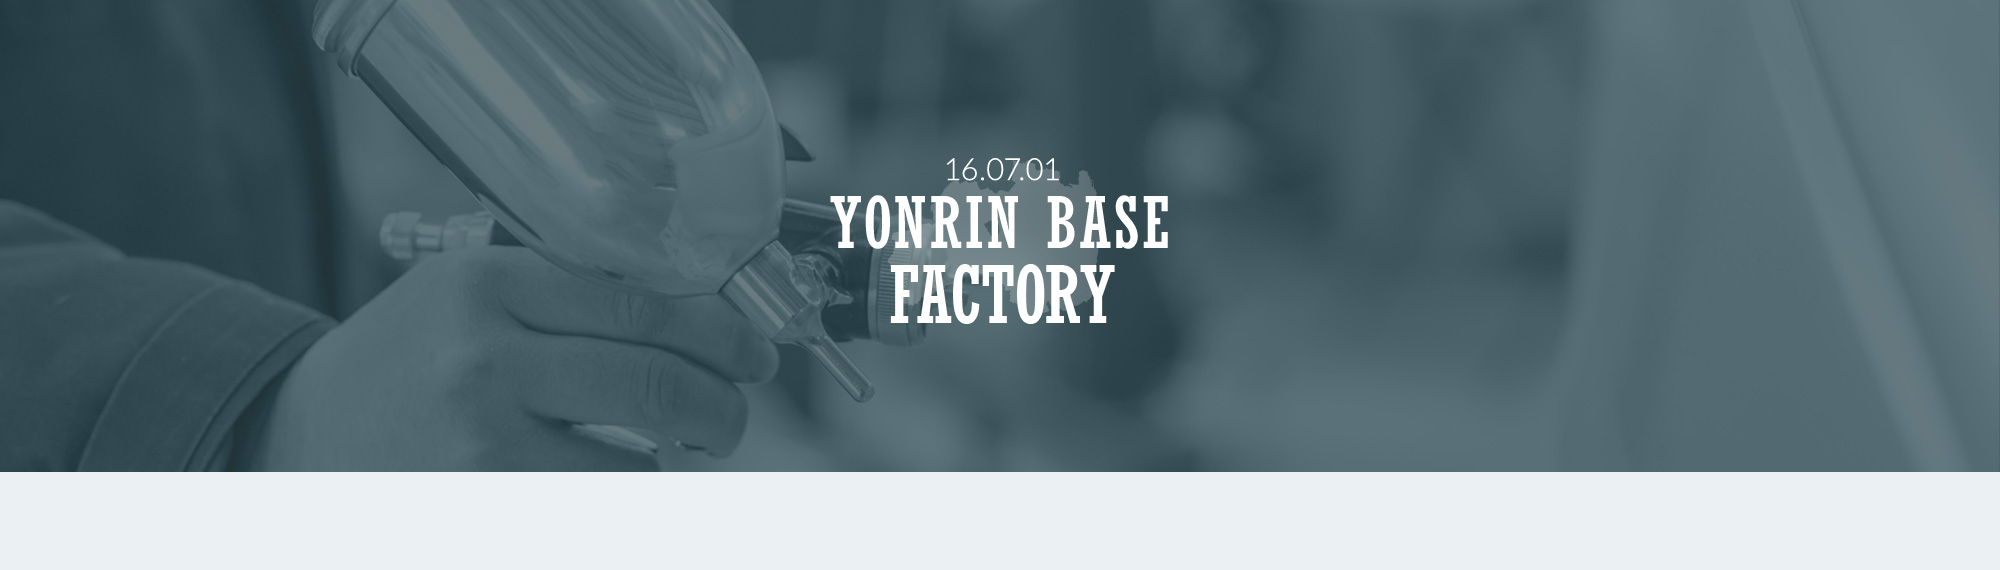 YONRIN BASE FACTORY